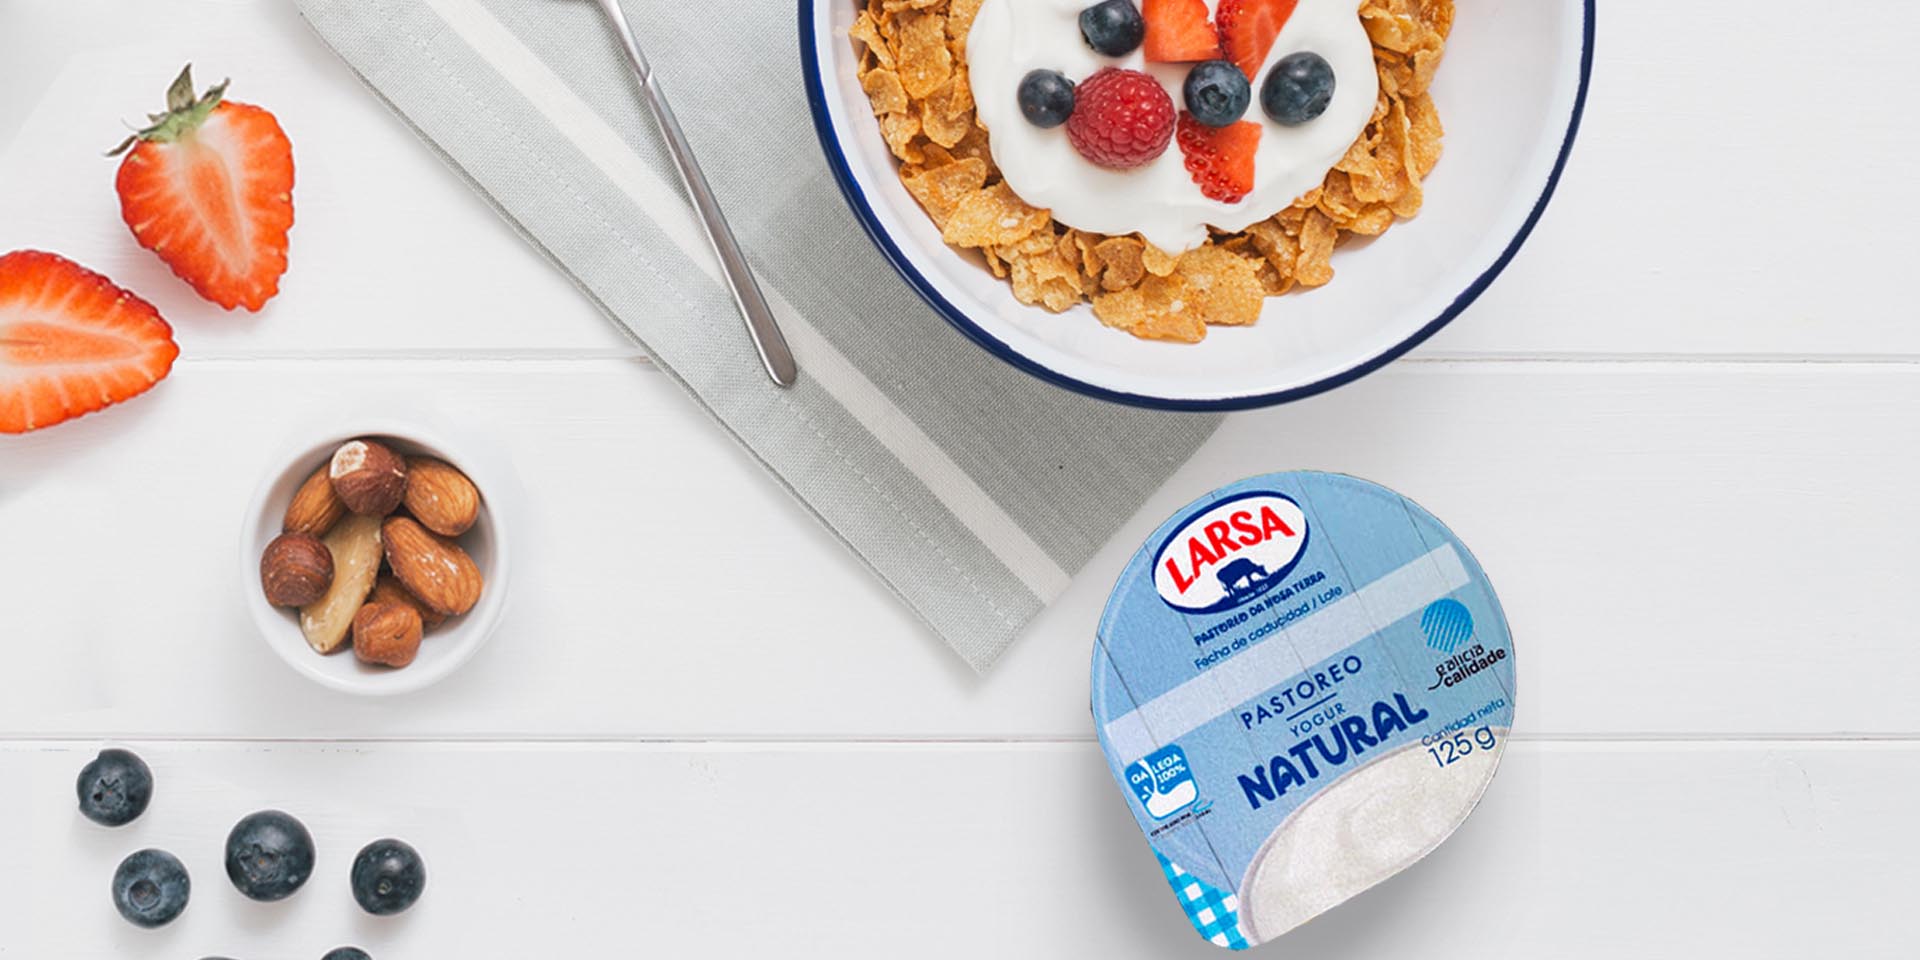 Con qué comer yogurt natural: 5 ideas deliciosas